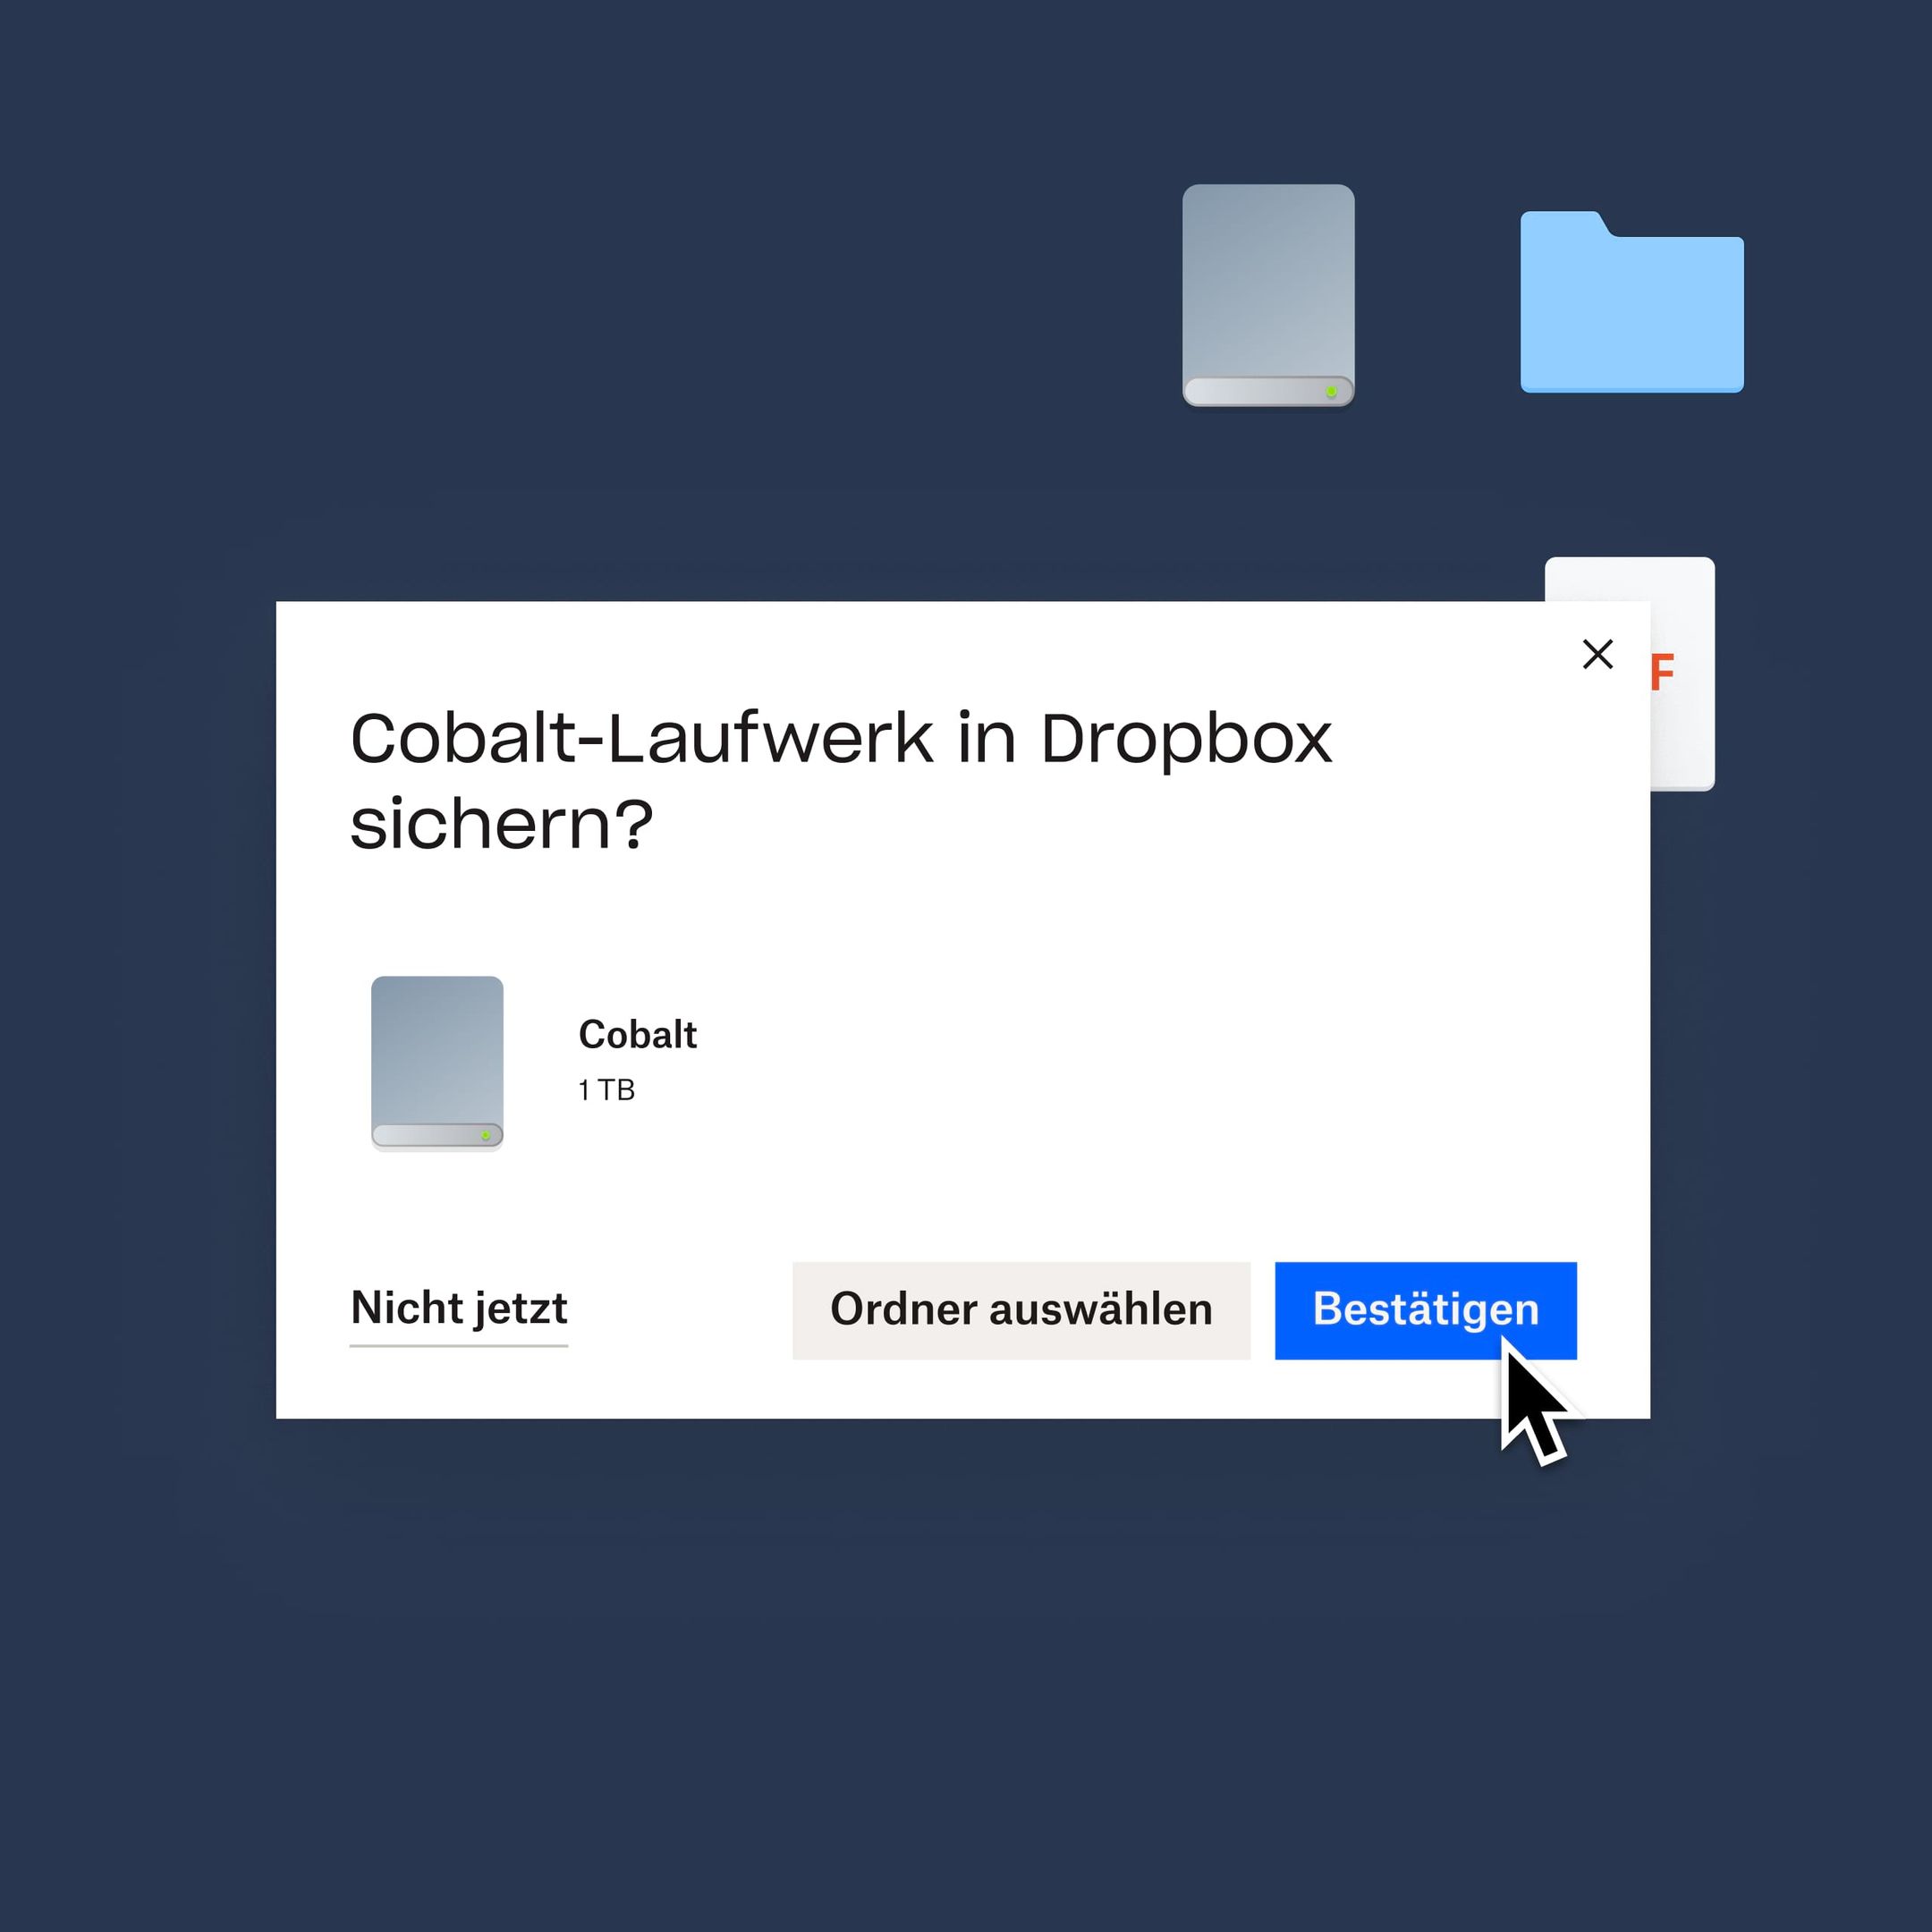 Ein Nutzer klickt auf eine blaue Schaltfläche „Bestätigen“, um die eigene Cobalt-Festplatte in Dropbox zu sichern